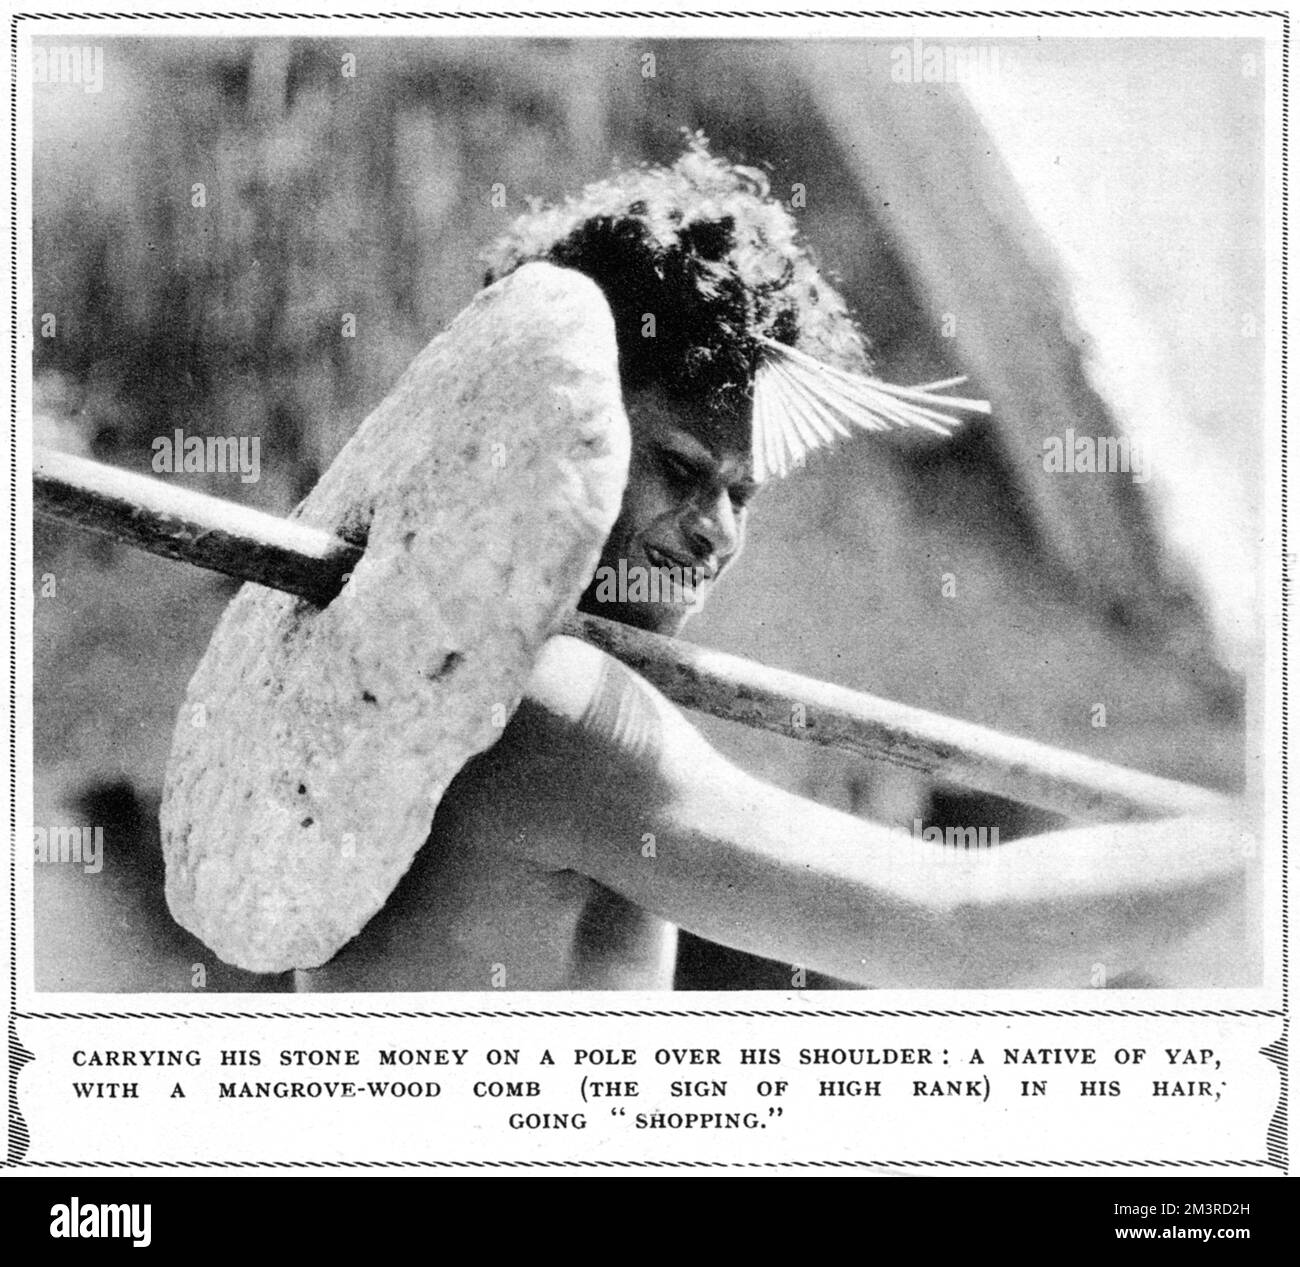 Ein Einheimischer aus Yap, der einen Mangrovenholzkamm im Haar trägt (ein Zeichen von hohem Rang) und Steingeld auf einer Stange über der Schulter trägt. Datum: 1937 Stockfoto